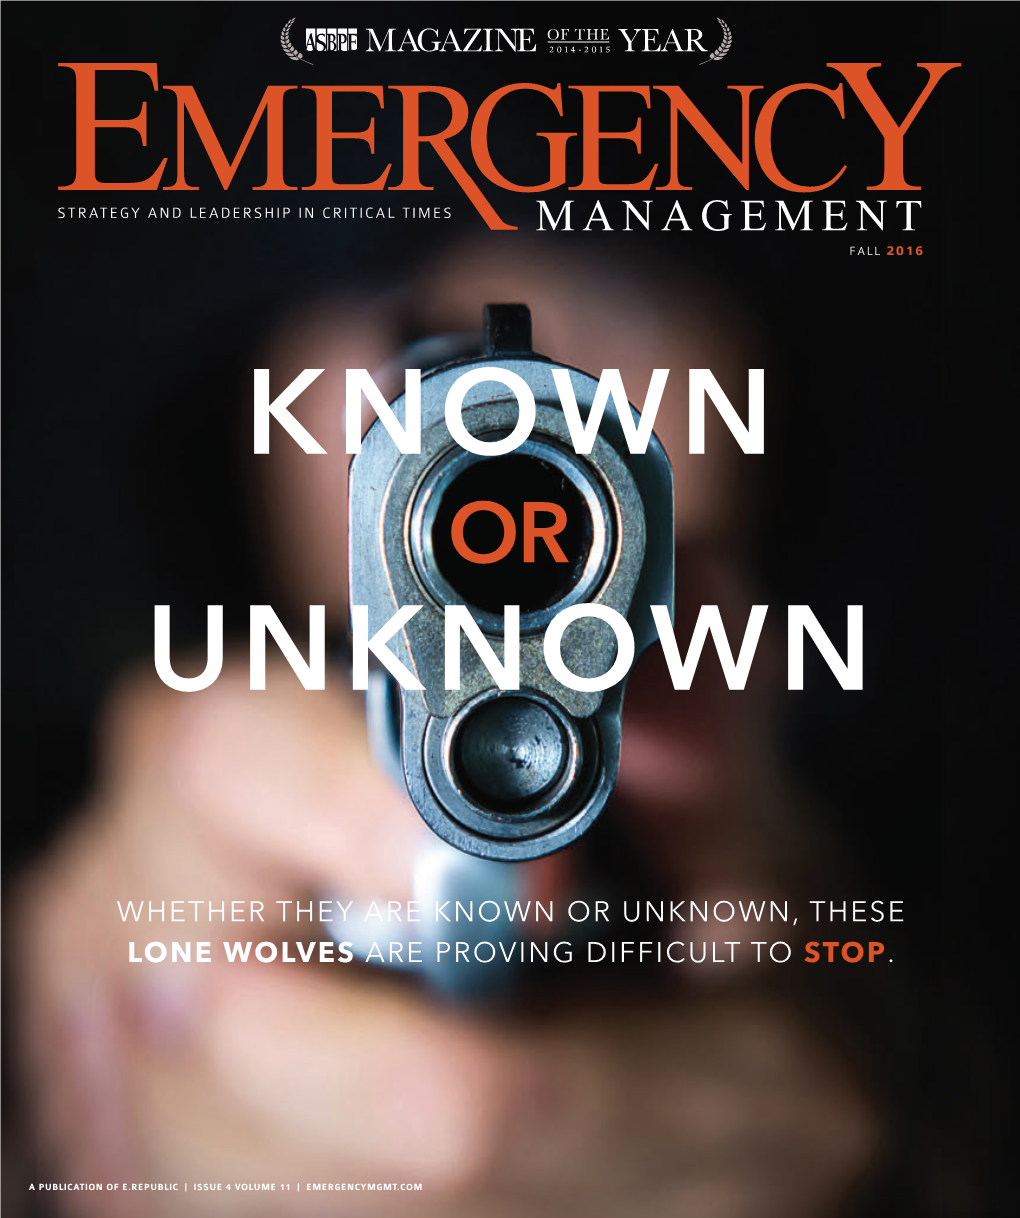 Emergency Management Magazine Fall 2016